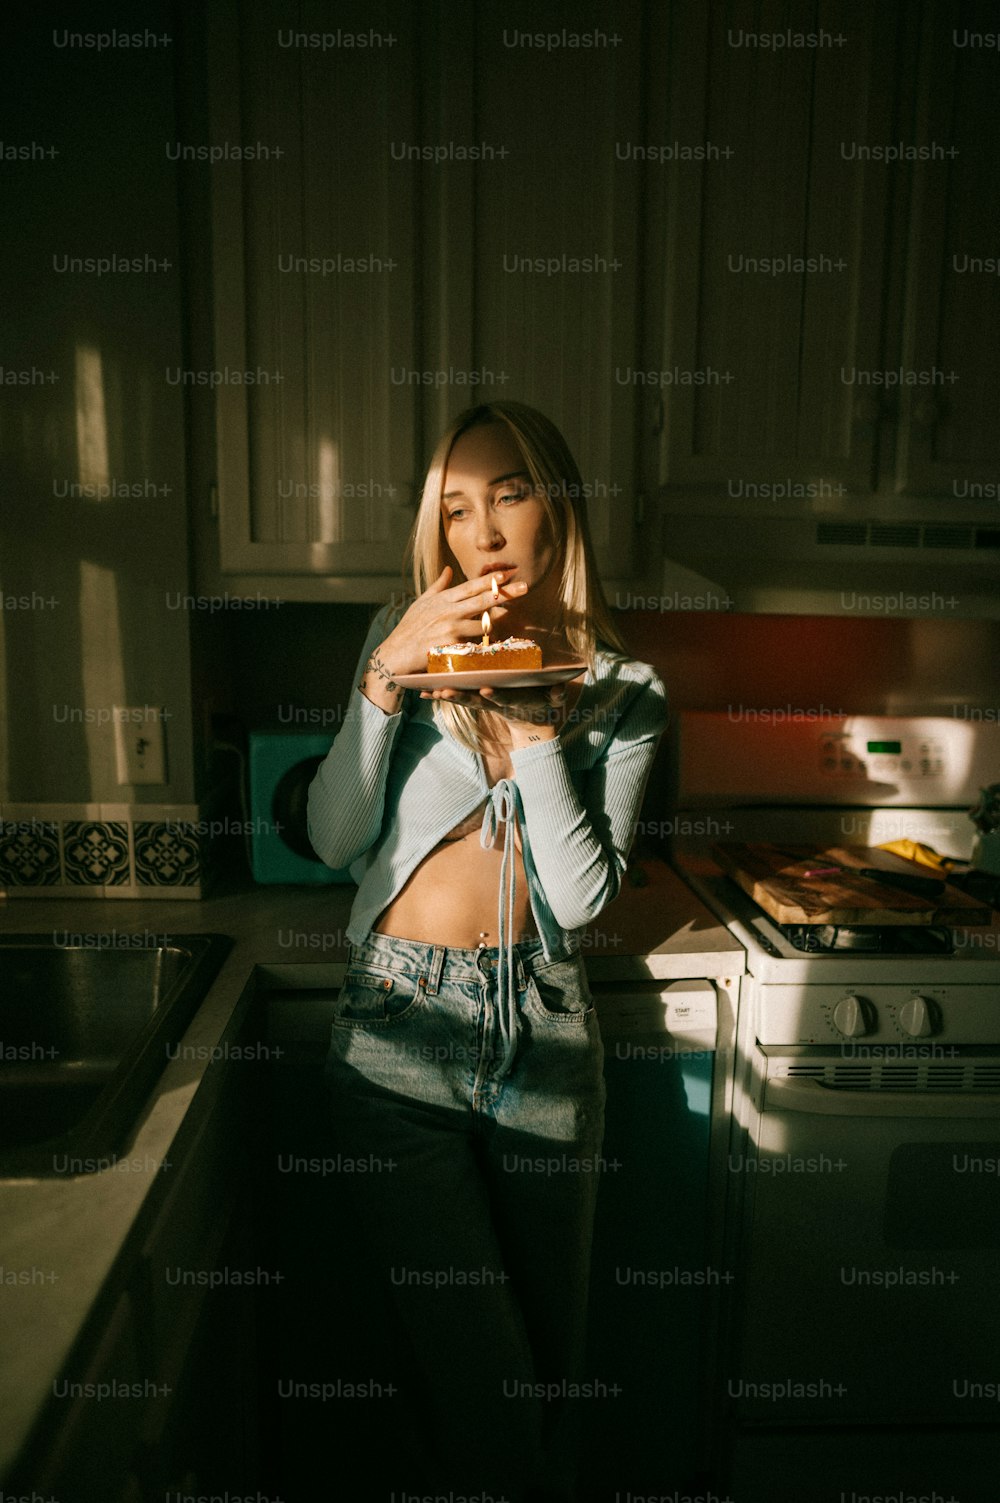 Una donna in piedi in una cucina con in mano una pizza